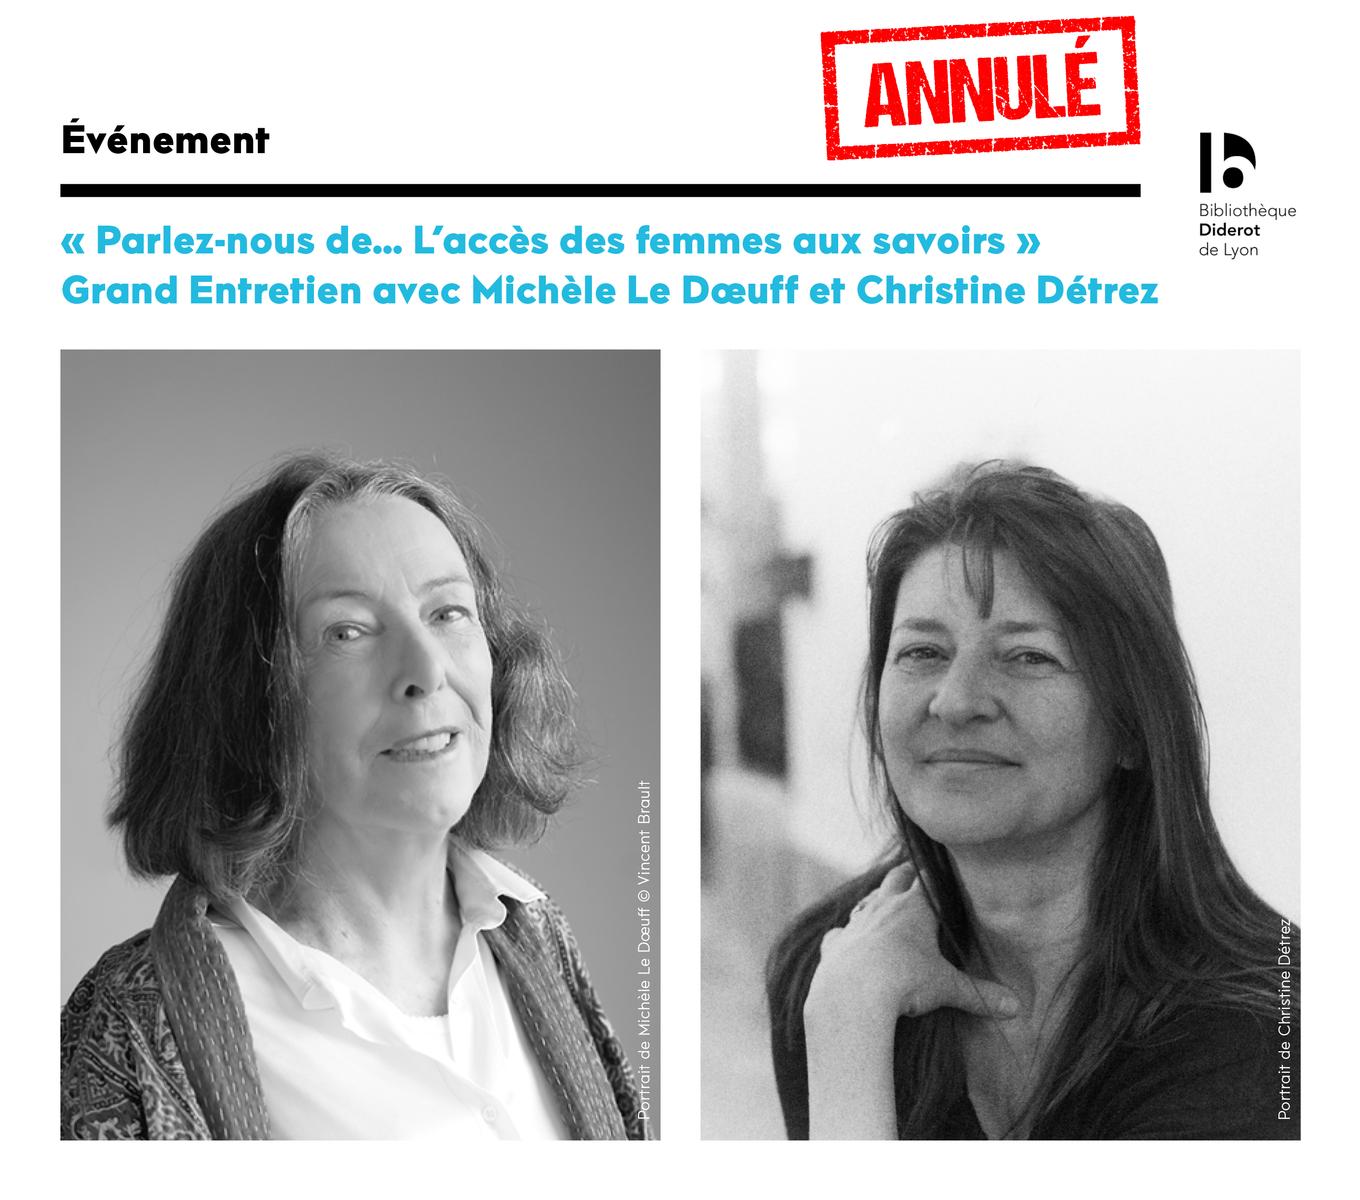 Événement annulé : Parlez-nous de... L'accès des femmes aux savoirs avec Michèle Le Dœuff et Christine Détrez